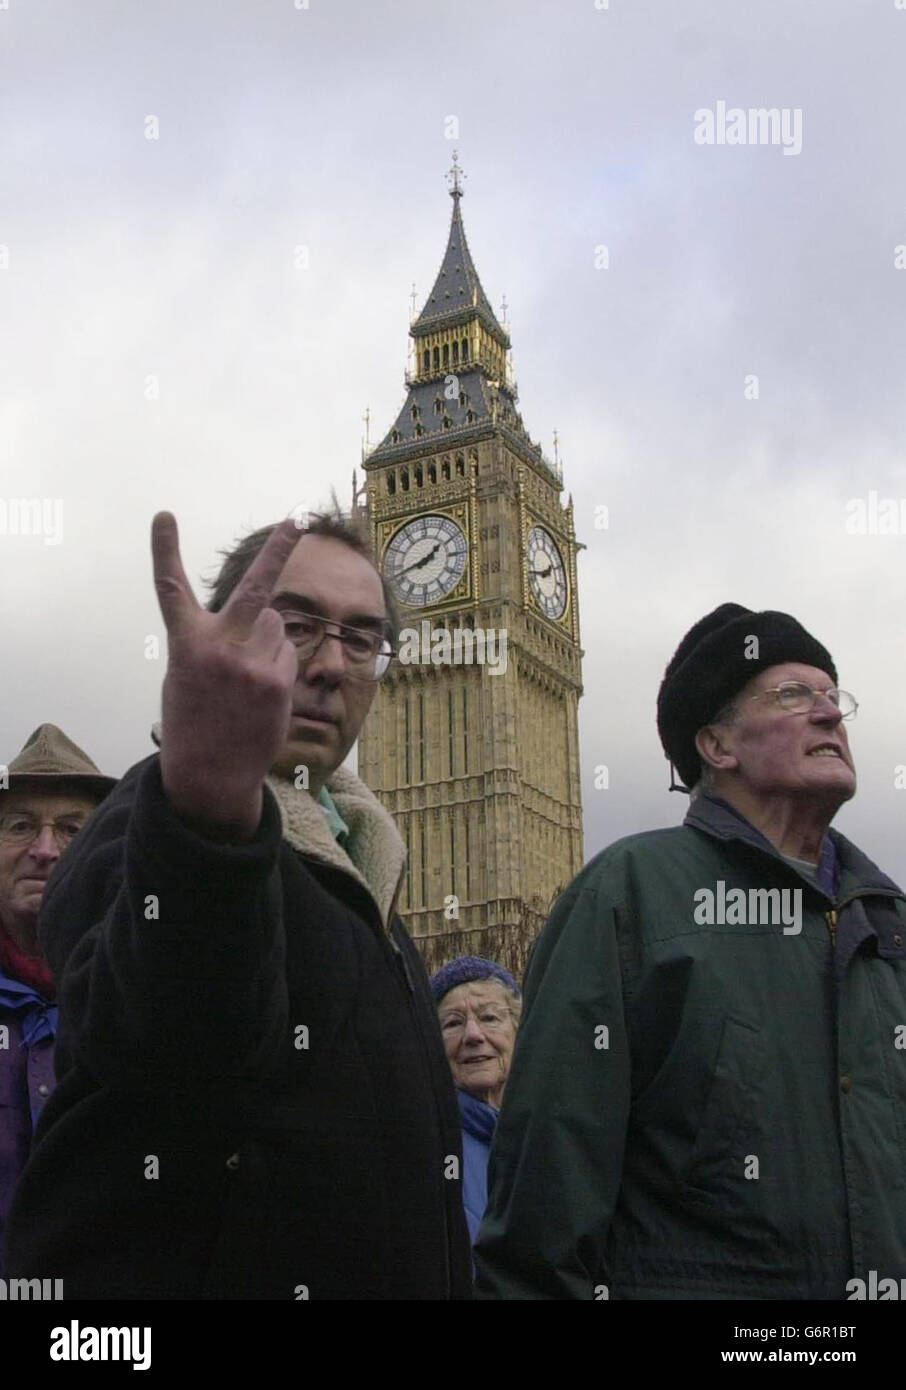 Ein Mann macht ein V-Zeichen, als Demonstranten, die größtenteils aus Rentnern bestehen, gegen steigende Steuererhöhungen im rat demonstrieren, während sie an den Houses of Parliament im Zentrum von London vorbeiziehen. Stockfoto